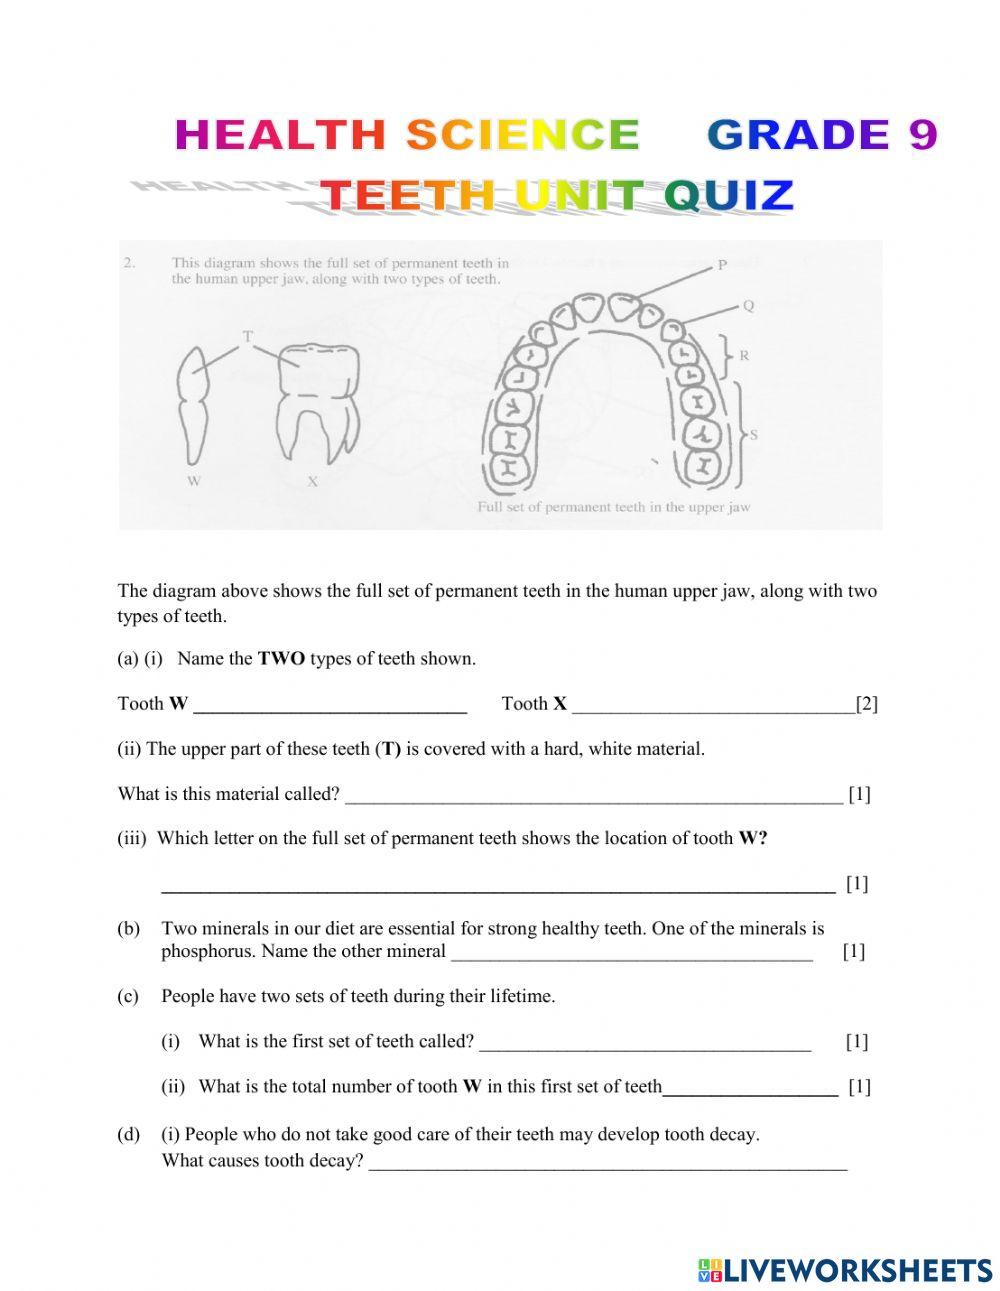 Health science unit quiz - teeth